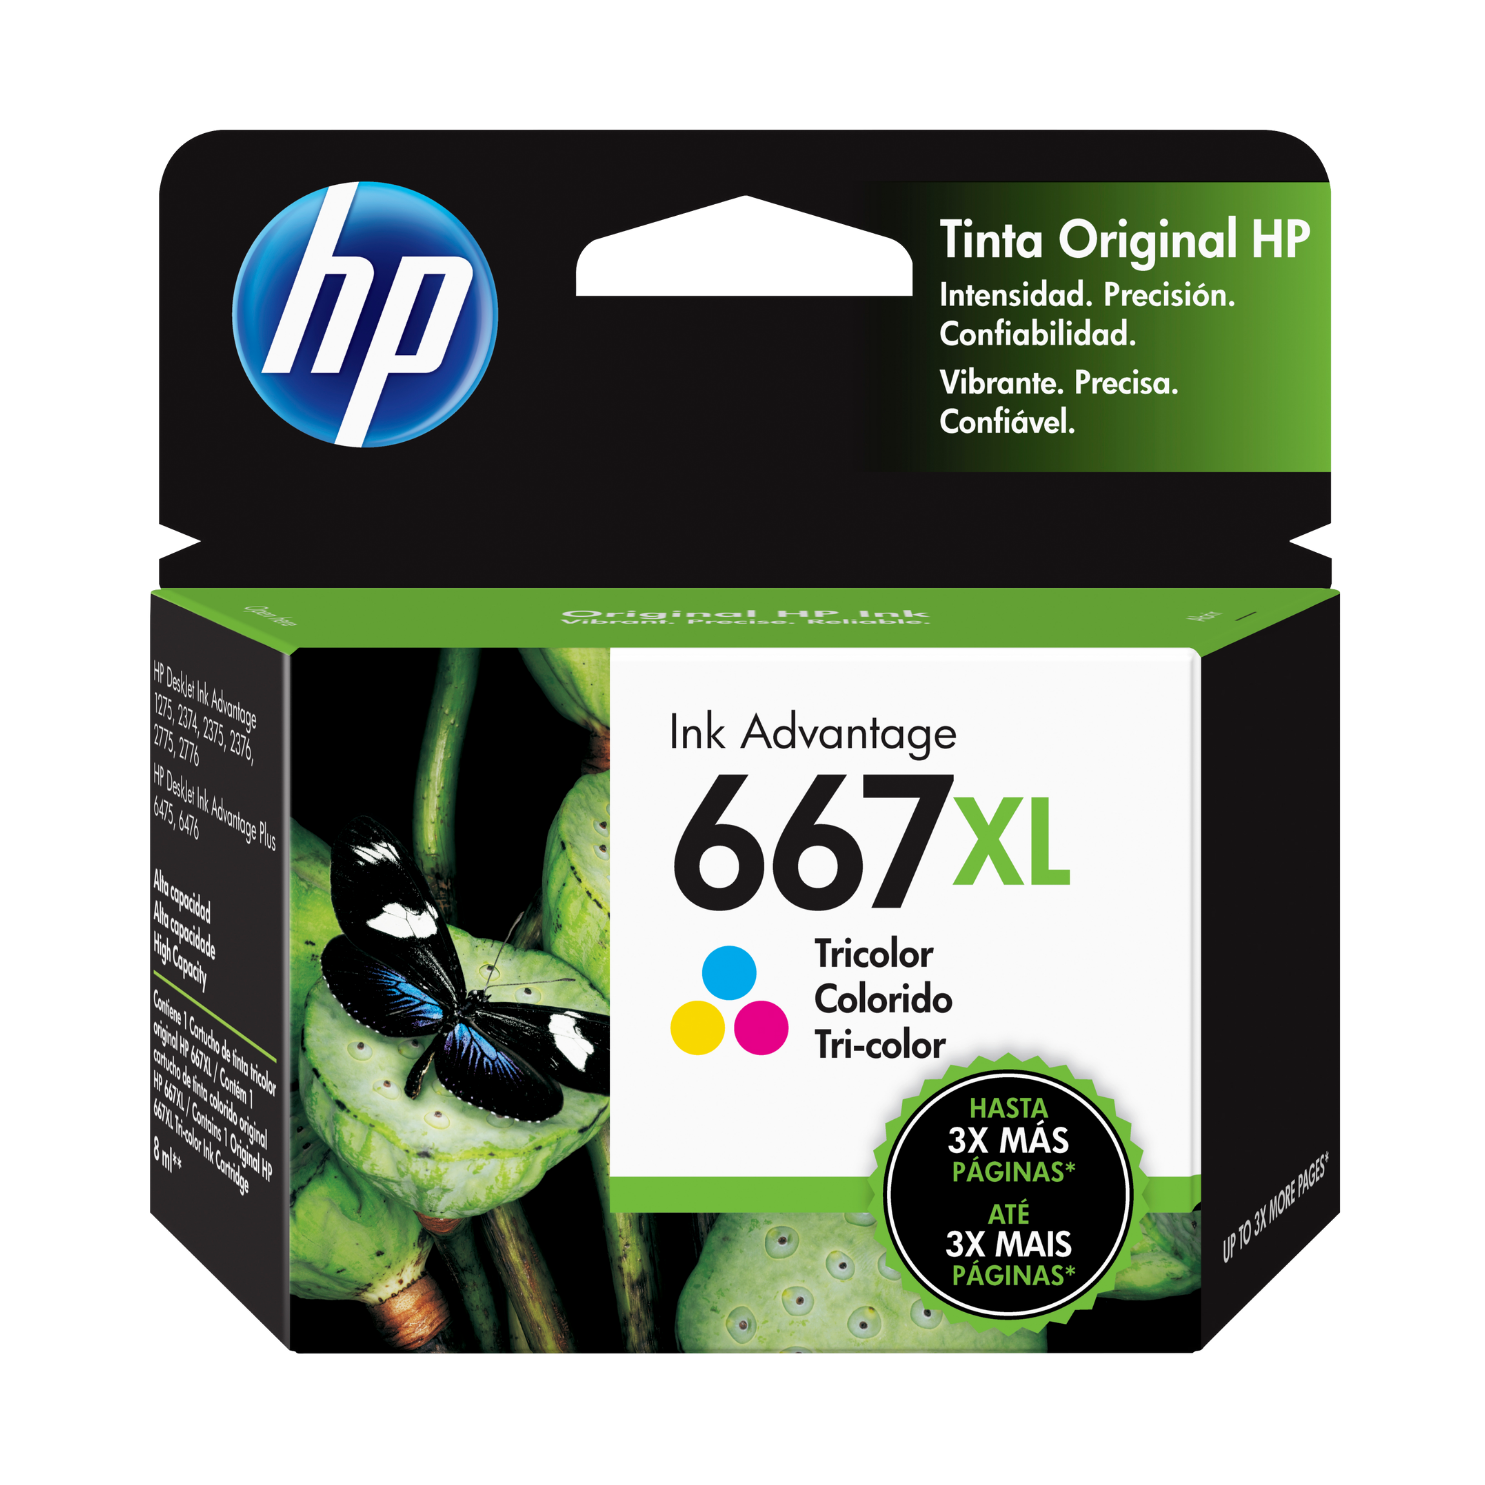 Cartucho de tinta HP 667XL Tricolor (3YM80AL) DeskJet 2775, 4175, 330 Pag.